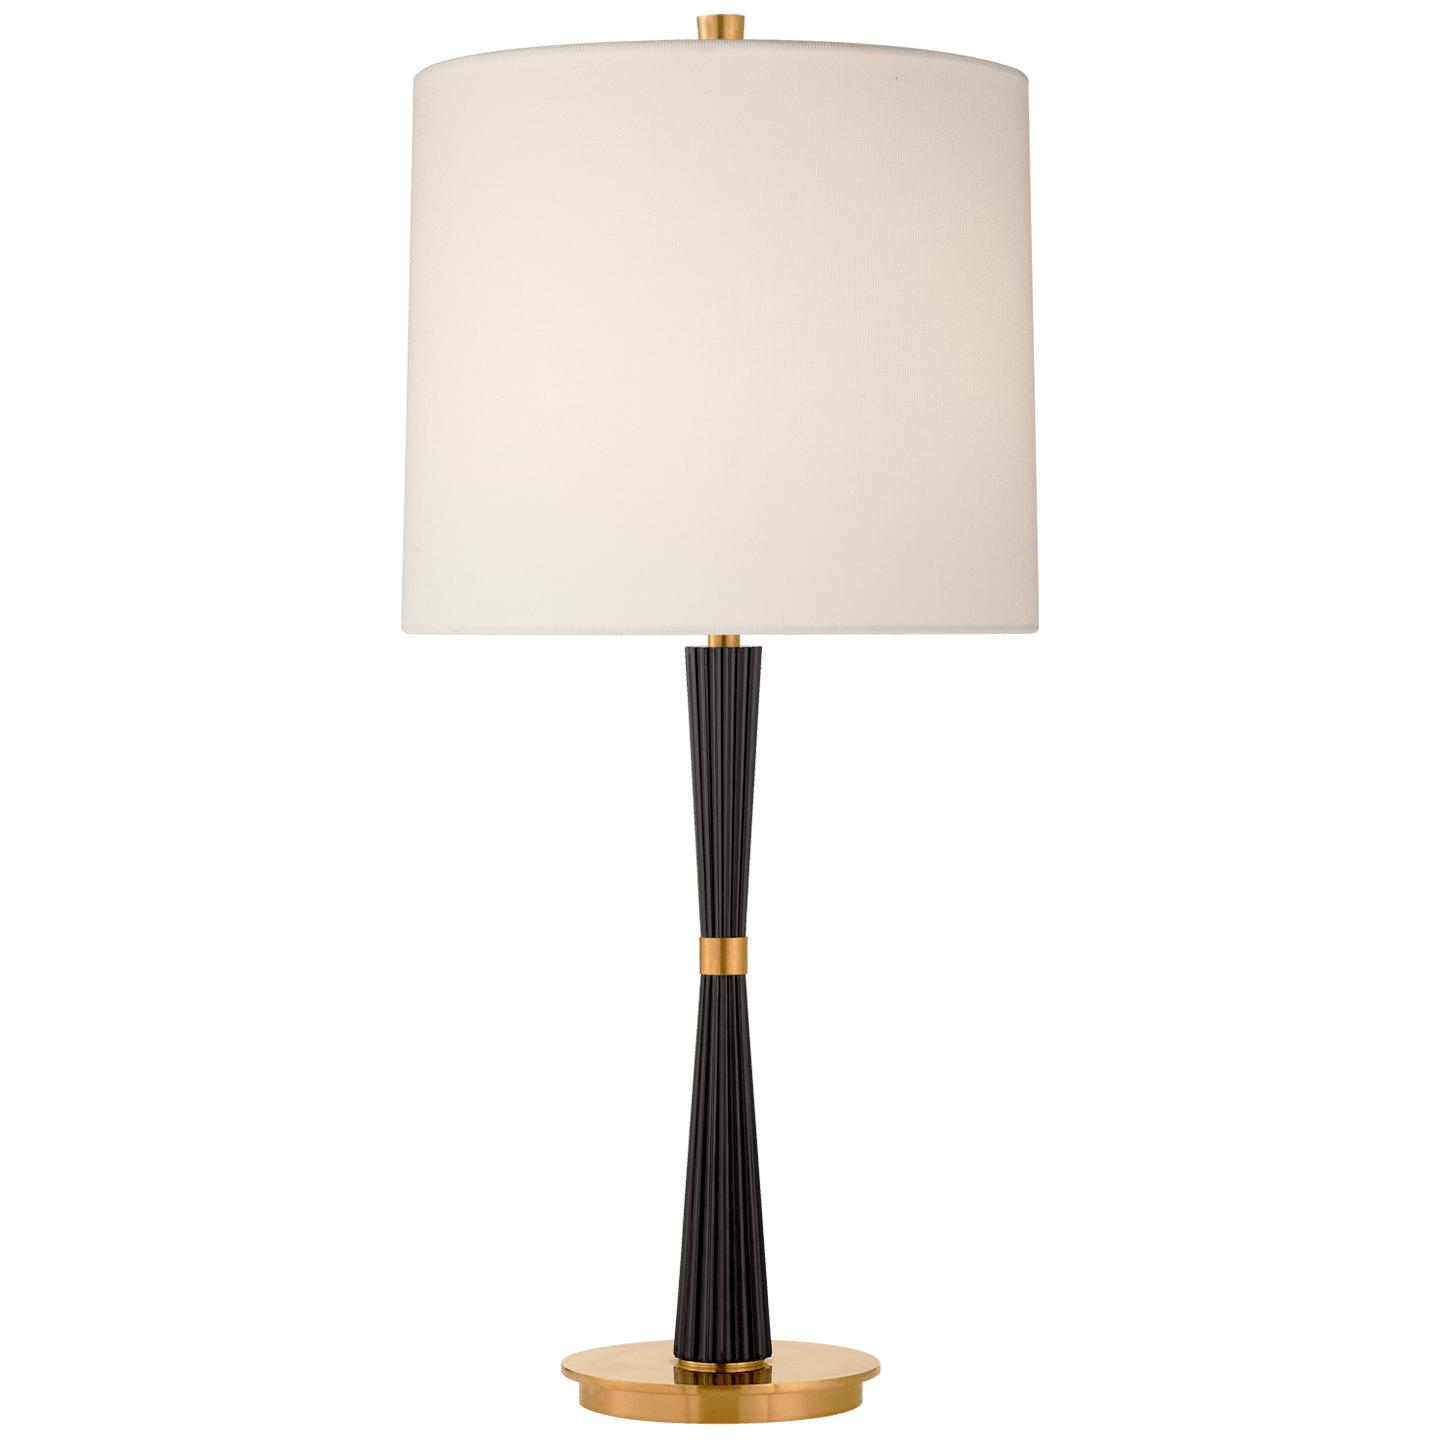 Купить Настольная лампа Refined Rib Medium Table Lamp в интернет-магазине roooms.ru